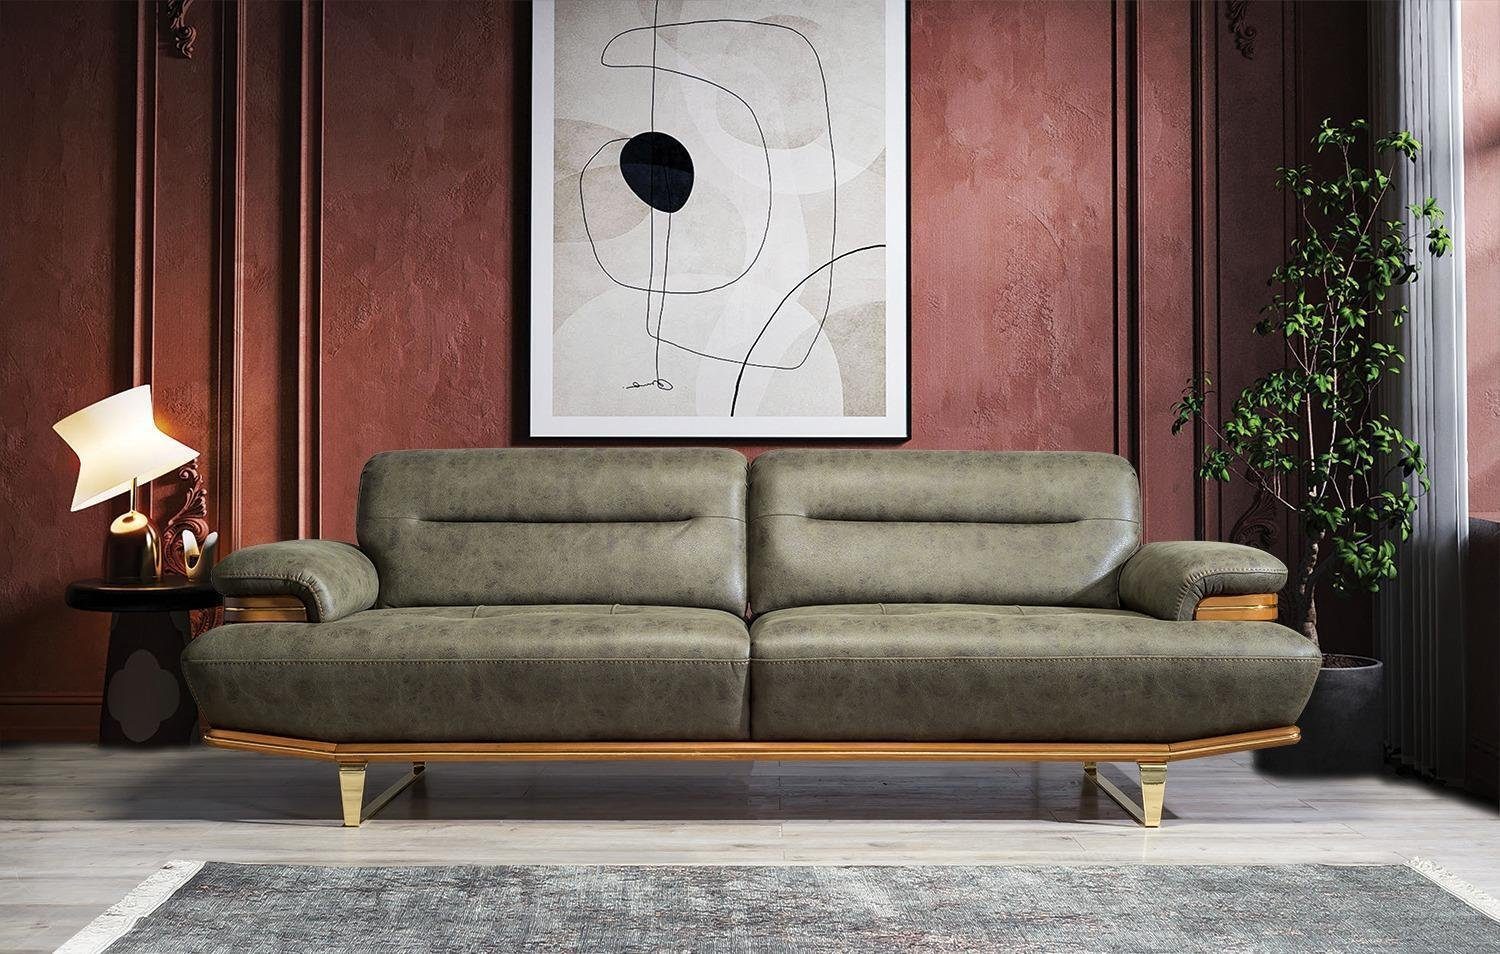 JVmoebel Sofa Dreisitzer Sofa 3 Sitzer Luxus Sofas Wohnzimmer Couch Leder Couchen, 1 Teile, Made in Europa